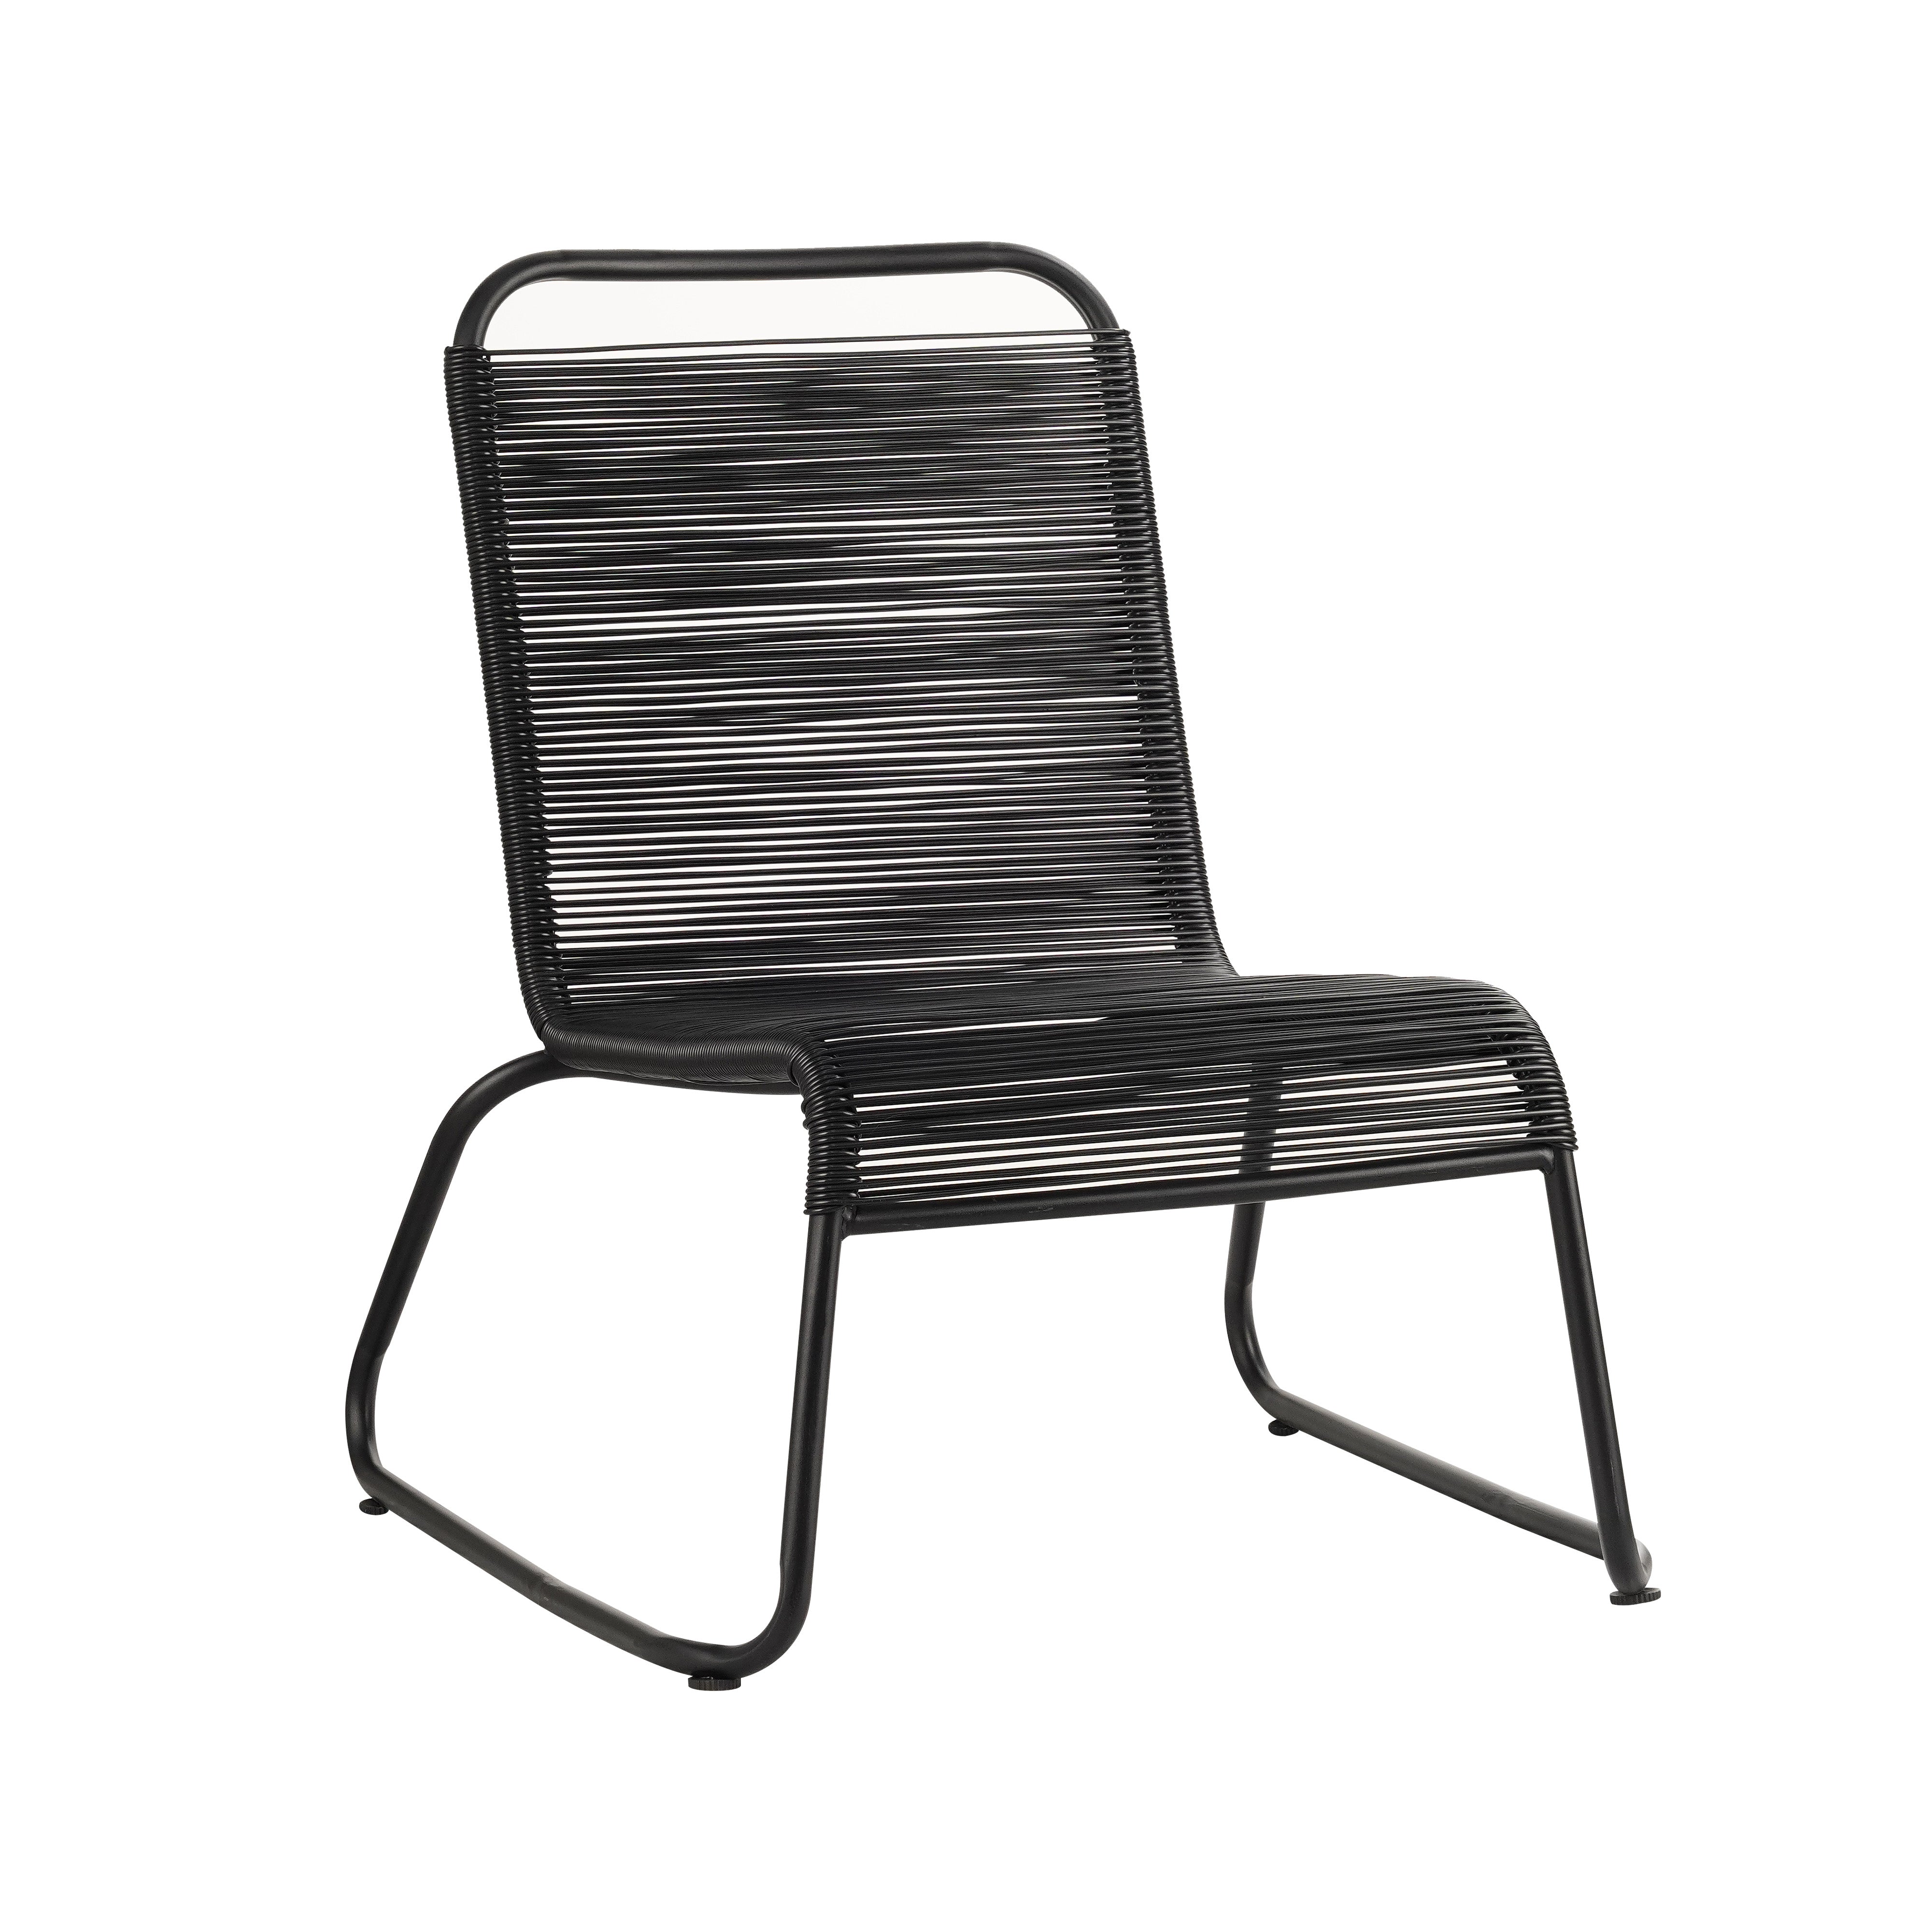 Vince Design Deurne outdoor relax chair Top Merken Winkel